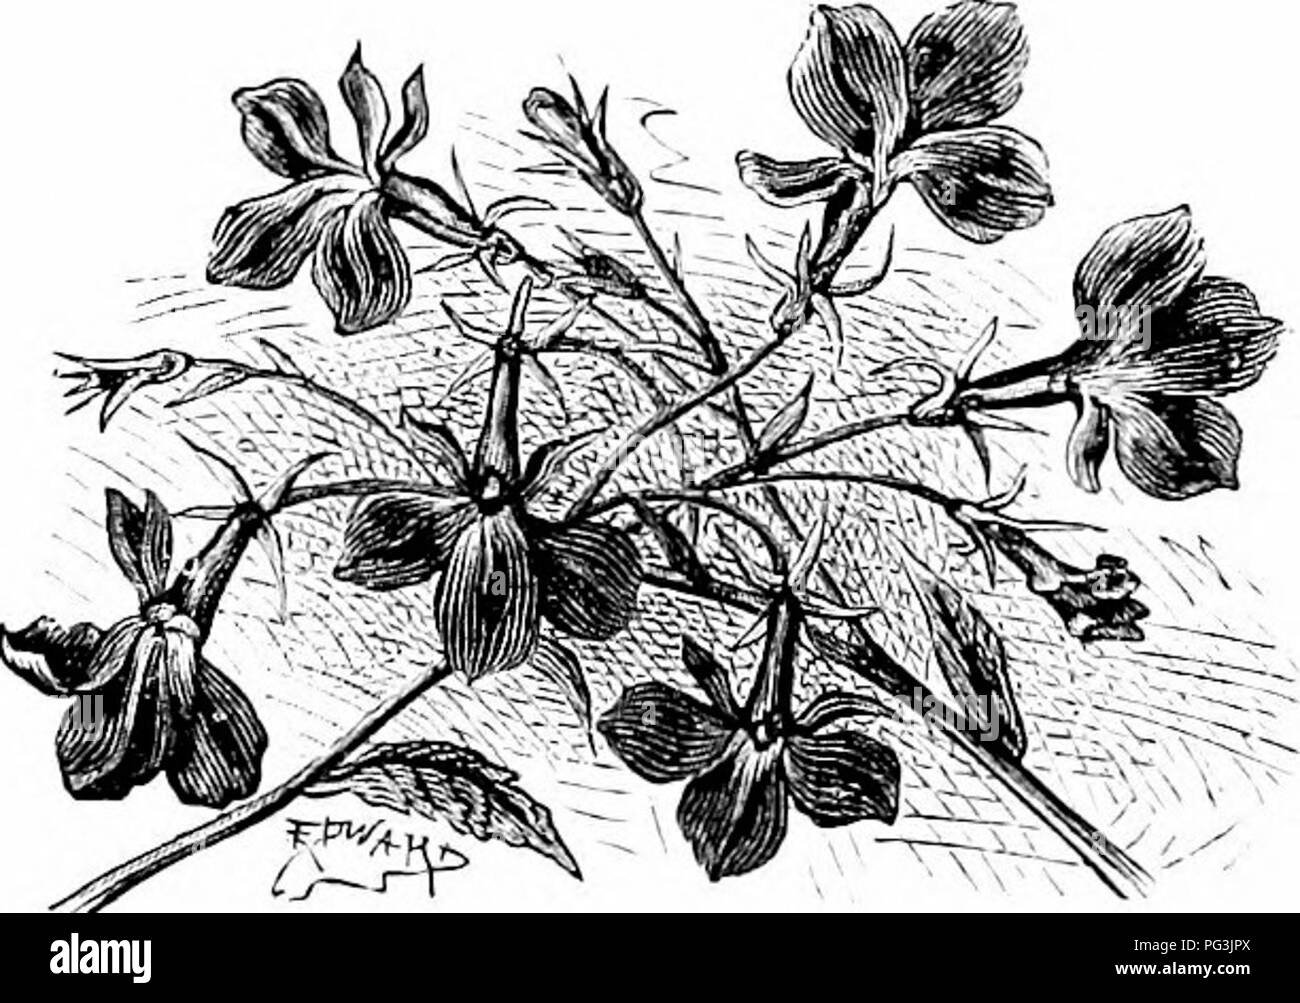 . Vertraute Garten Blumen. Blumen, Pflanzen, Zierpflanzen ; Blumenkultur. 88 VERTRAUTER GARTEN FLOIFERS. Wahrscheinlich ohne Gehalt, aber wenigen offiziellen Pflichten. Im Jahr 1576 veröffentlichte er seine "Observationes/', worin kann die Quellen der viel der Informationen, die bei Parkinson "Theatrum Botanicum" und andere Werke der Zeit, die nun überraschen uns liy ihre Gelehrsamkeit verkörperte gefunden werden, ihre Vollständigkeit und die herrliche Genauigkeit ihrer Gravuren. Die lobelien sind weit verstreut, aber es gibt nicht viele von ihnen. Es gibt zwei britische Arten, nämlich, L. urens, eine sehr seltene Pla Stockfoto